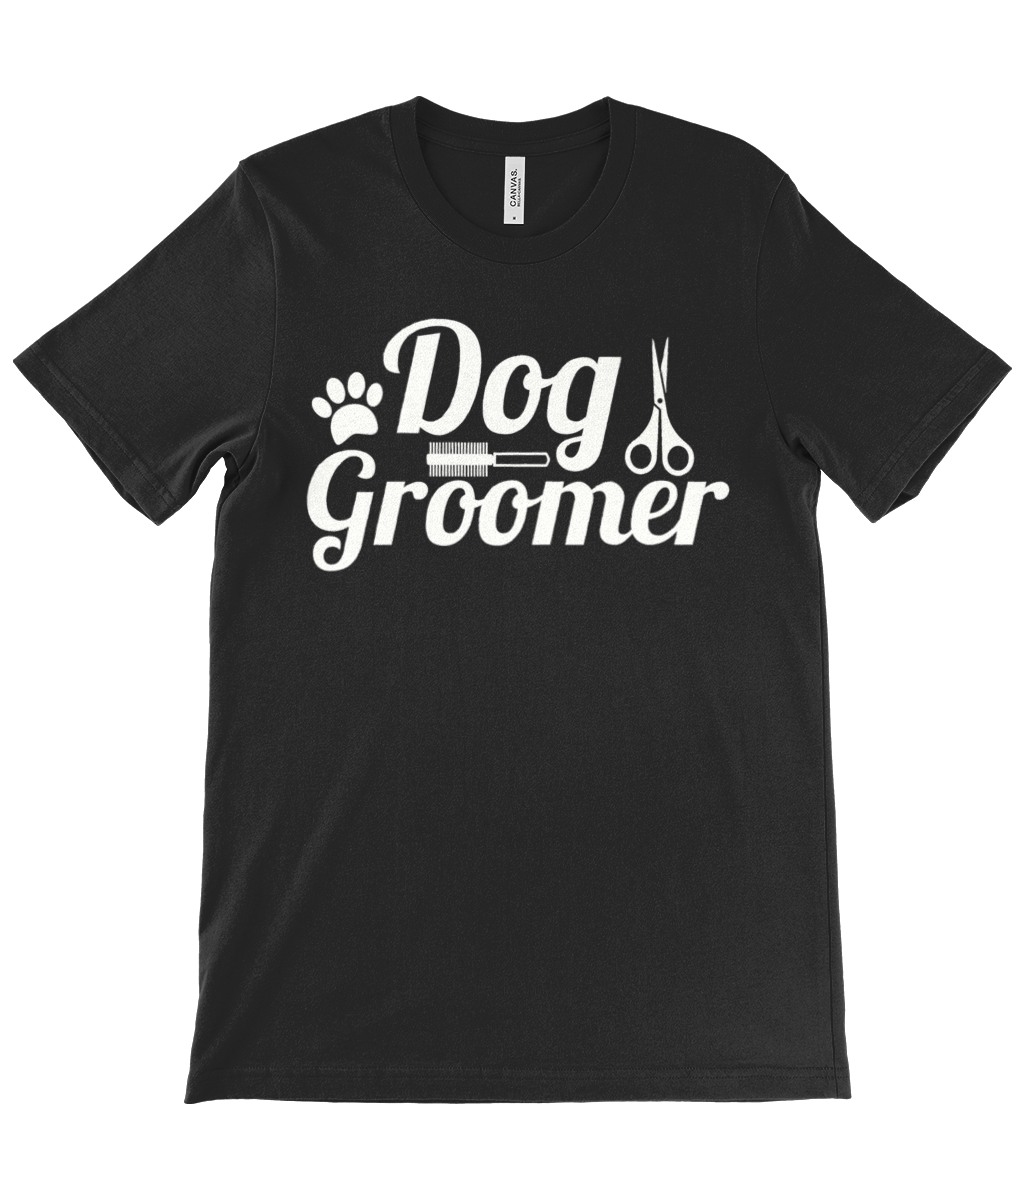 'Dog Groomer' Black Short Sleeve Poodle World T-Shirt